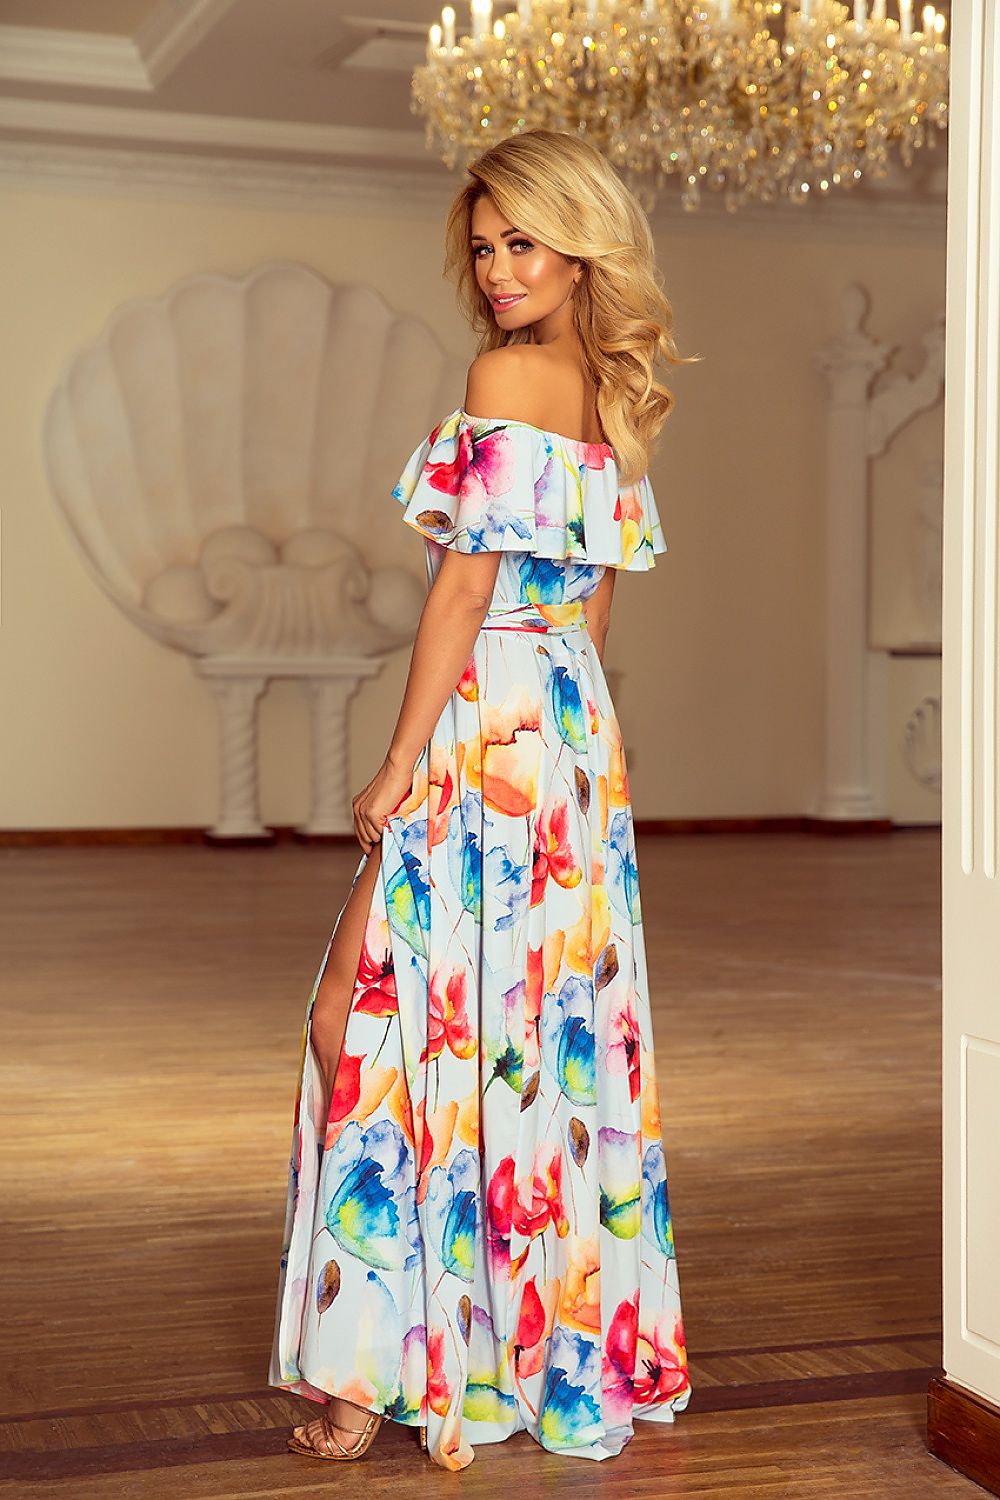 Bloemenmotief  bohemian maxi jurk in pastelkleuren